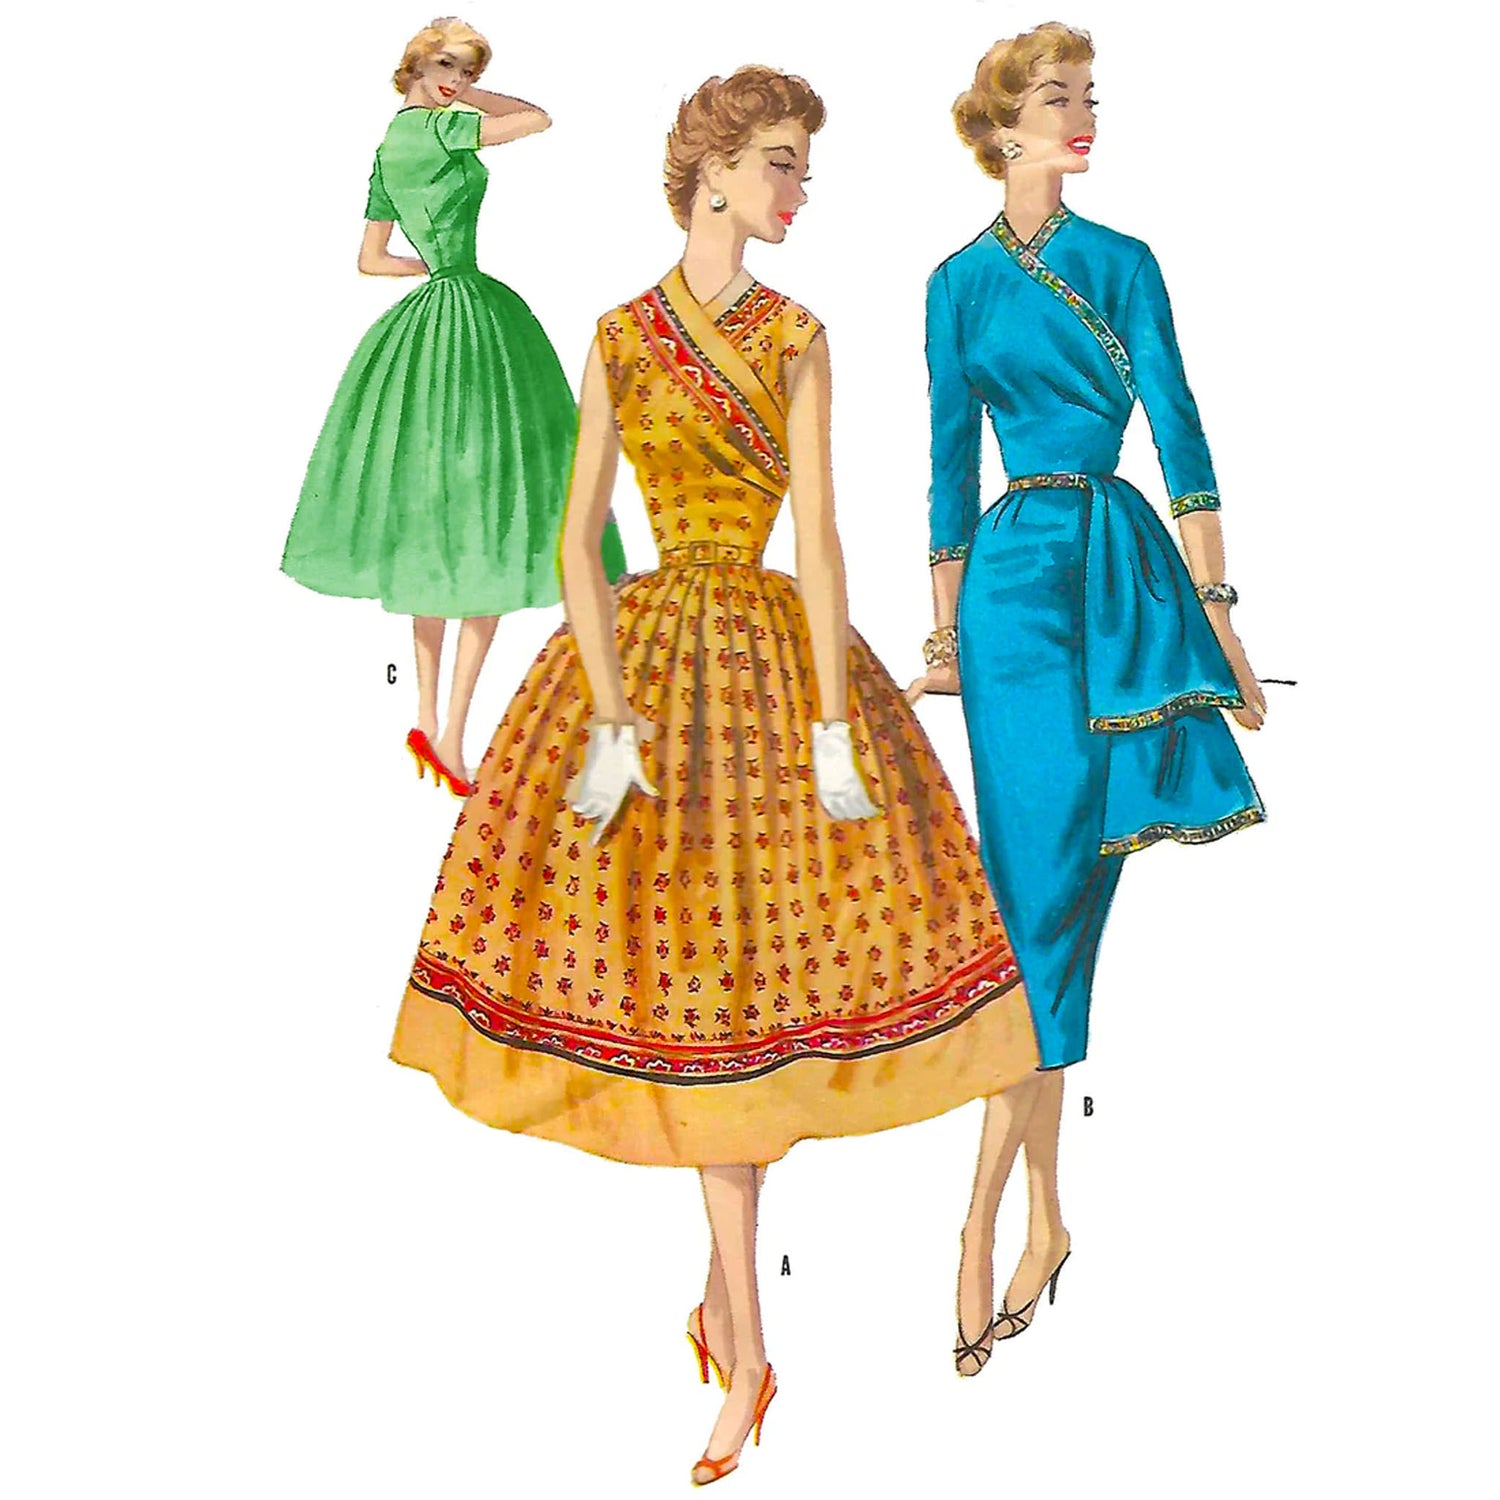 Vintage Sewing Patterns for Women, Men & Children – Vintage Sewing